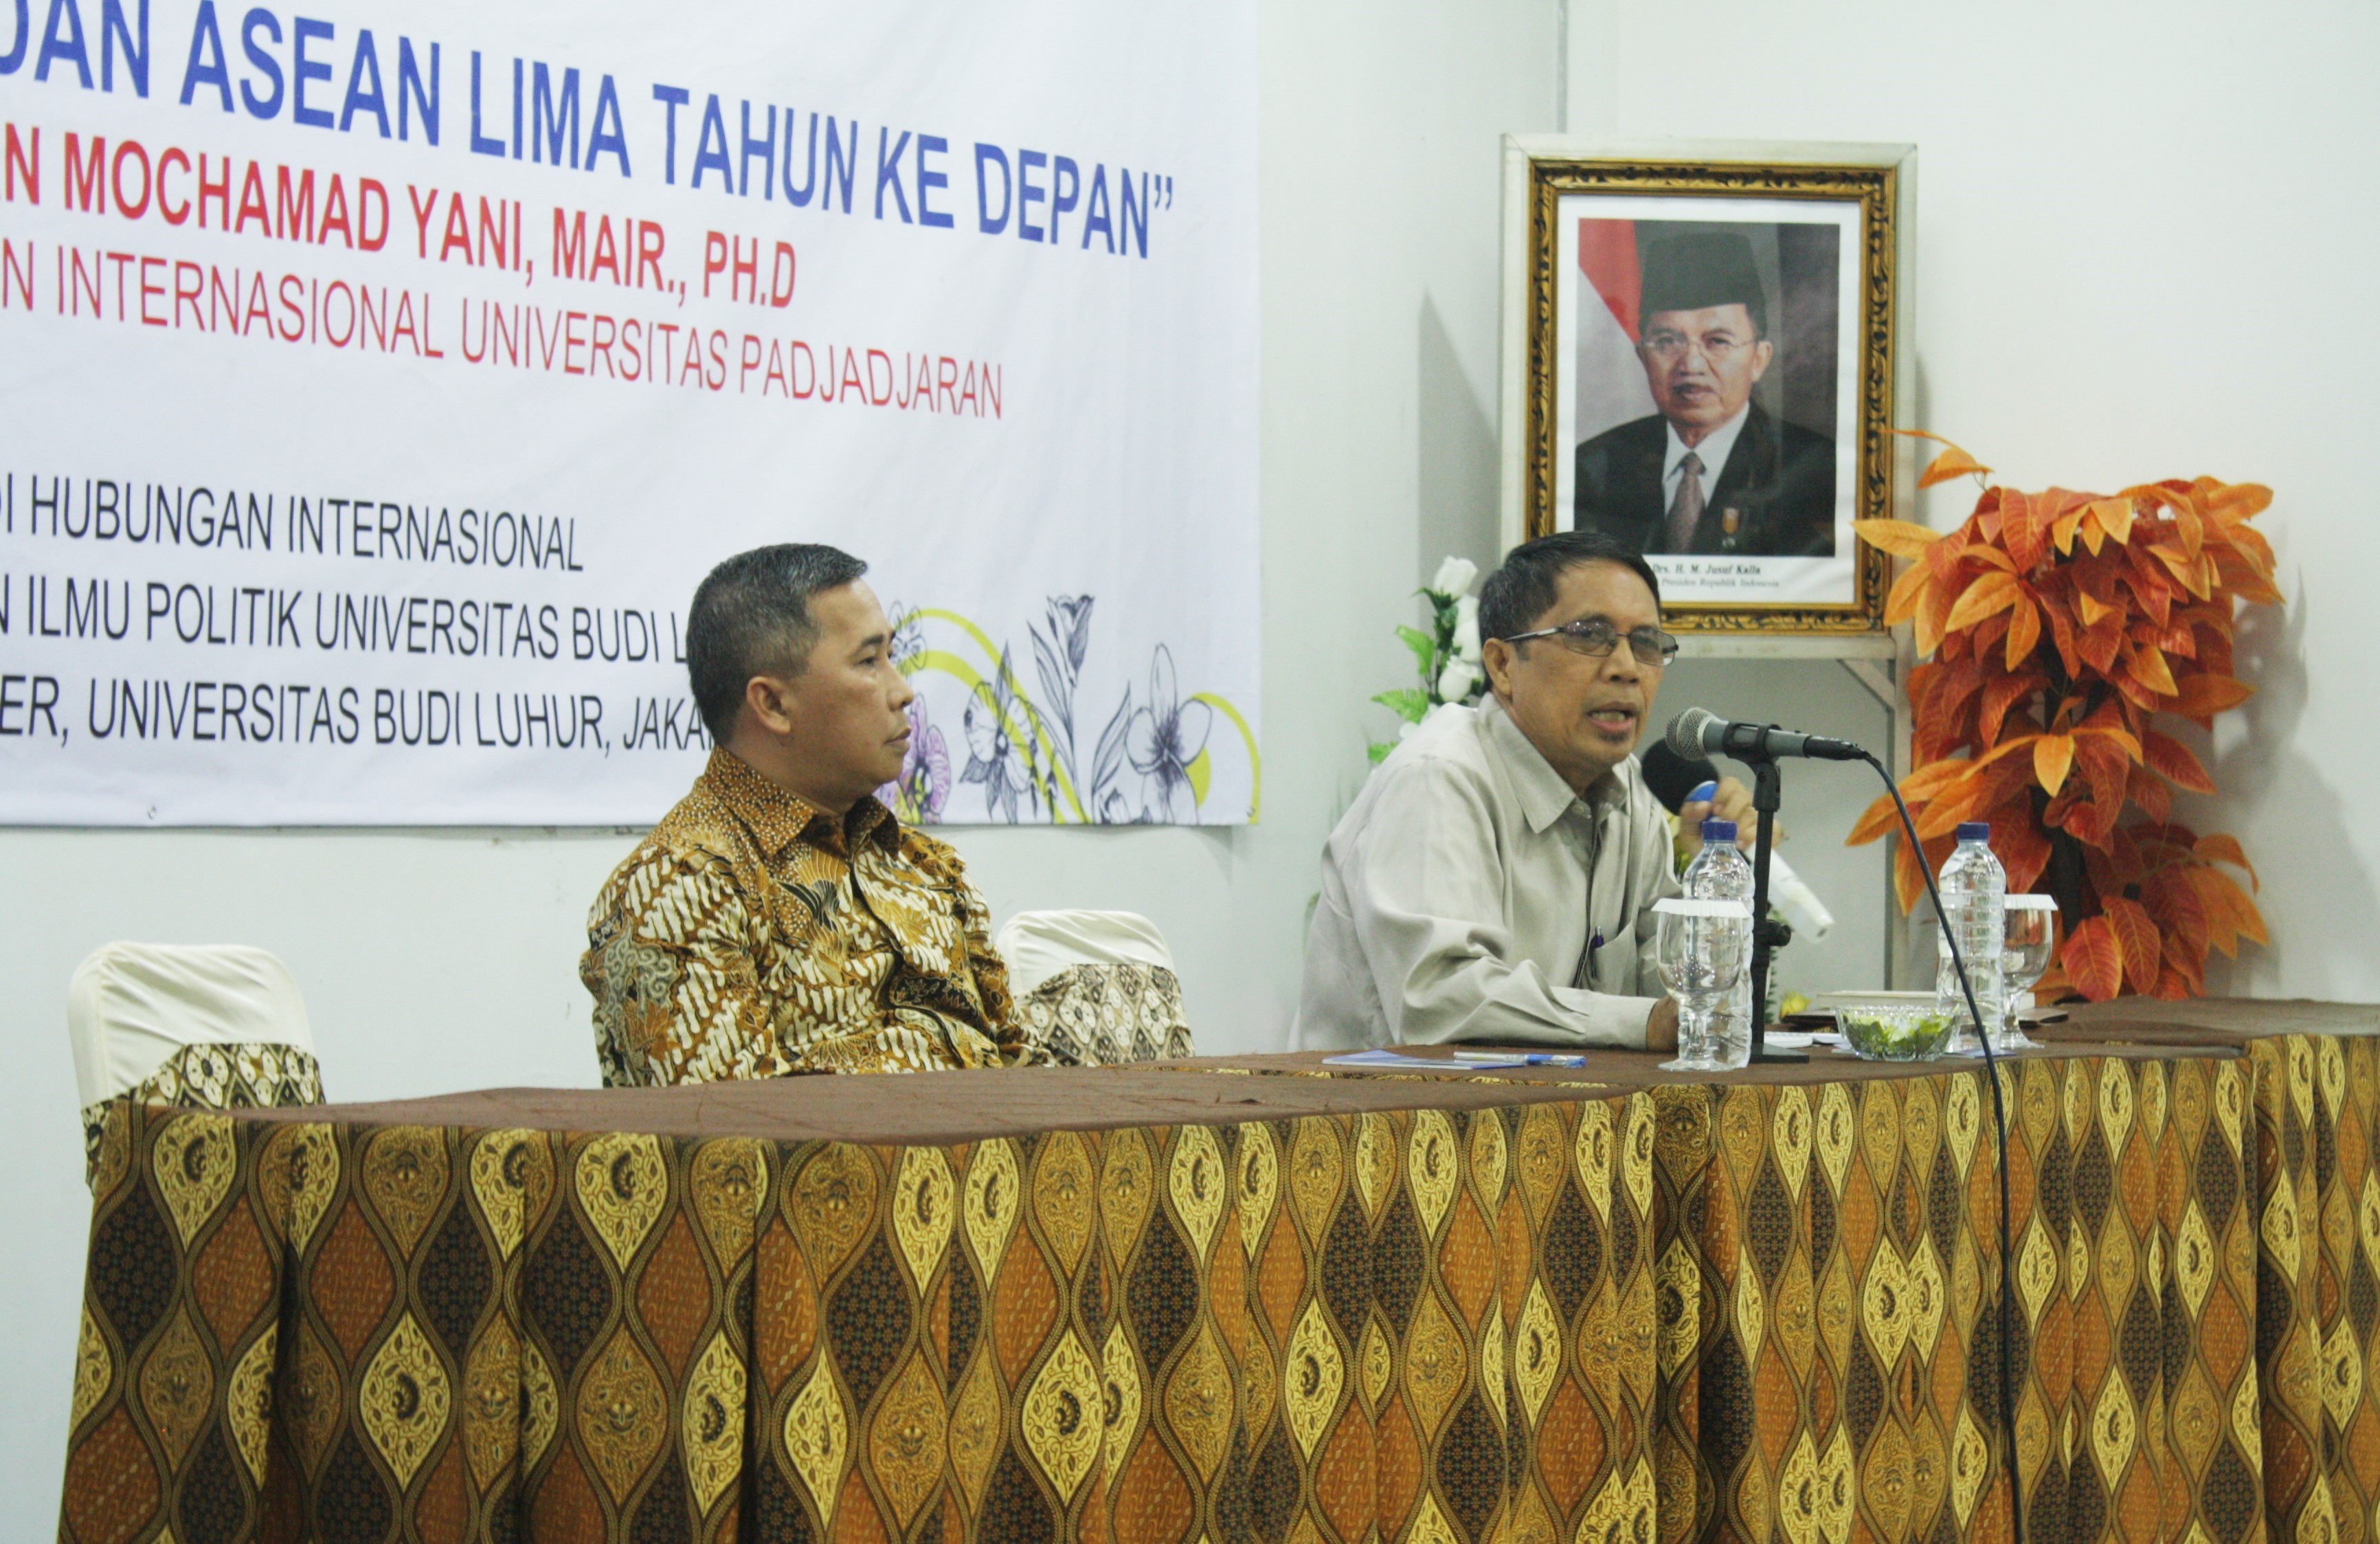 FISIP Seminar Series 2016: “Tantangan Indonesia dan ASEAN dalam Lima Tahun ke Depan”